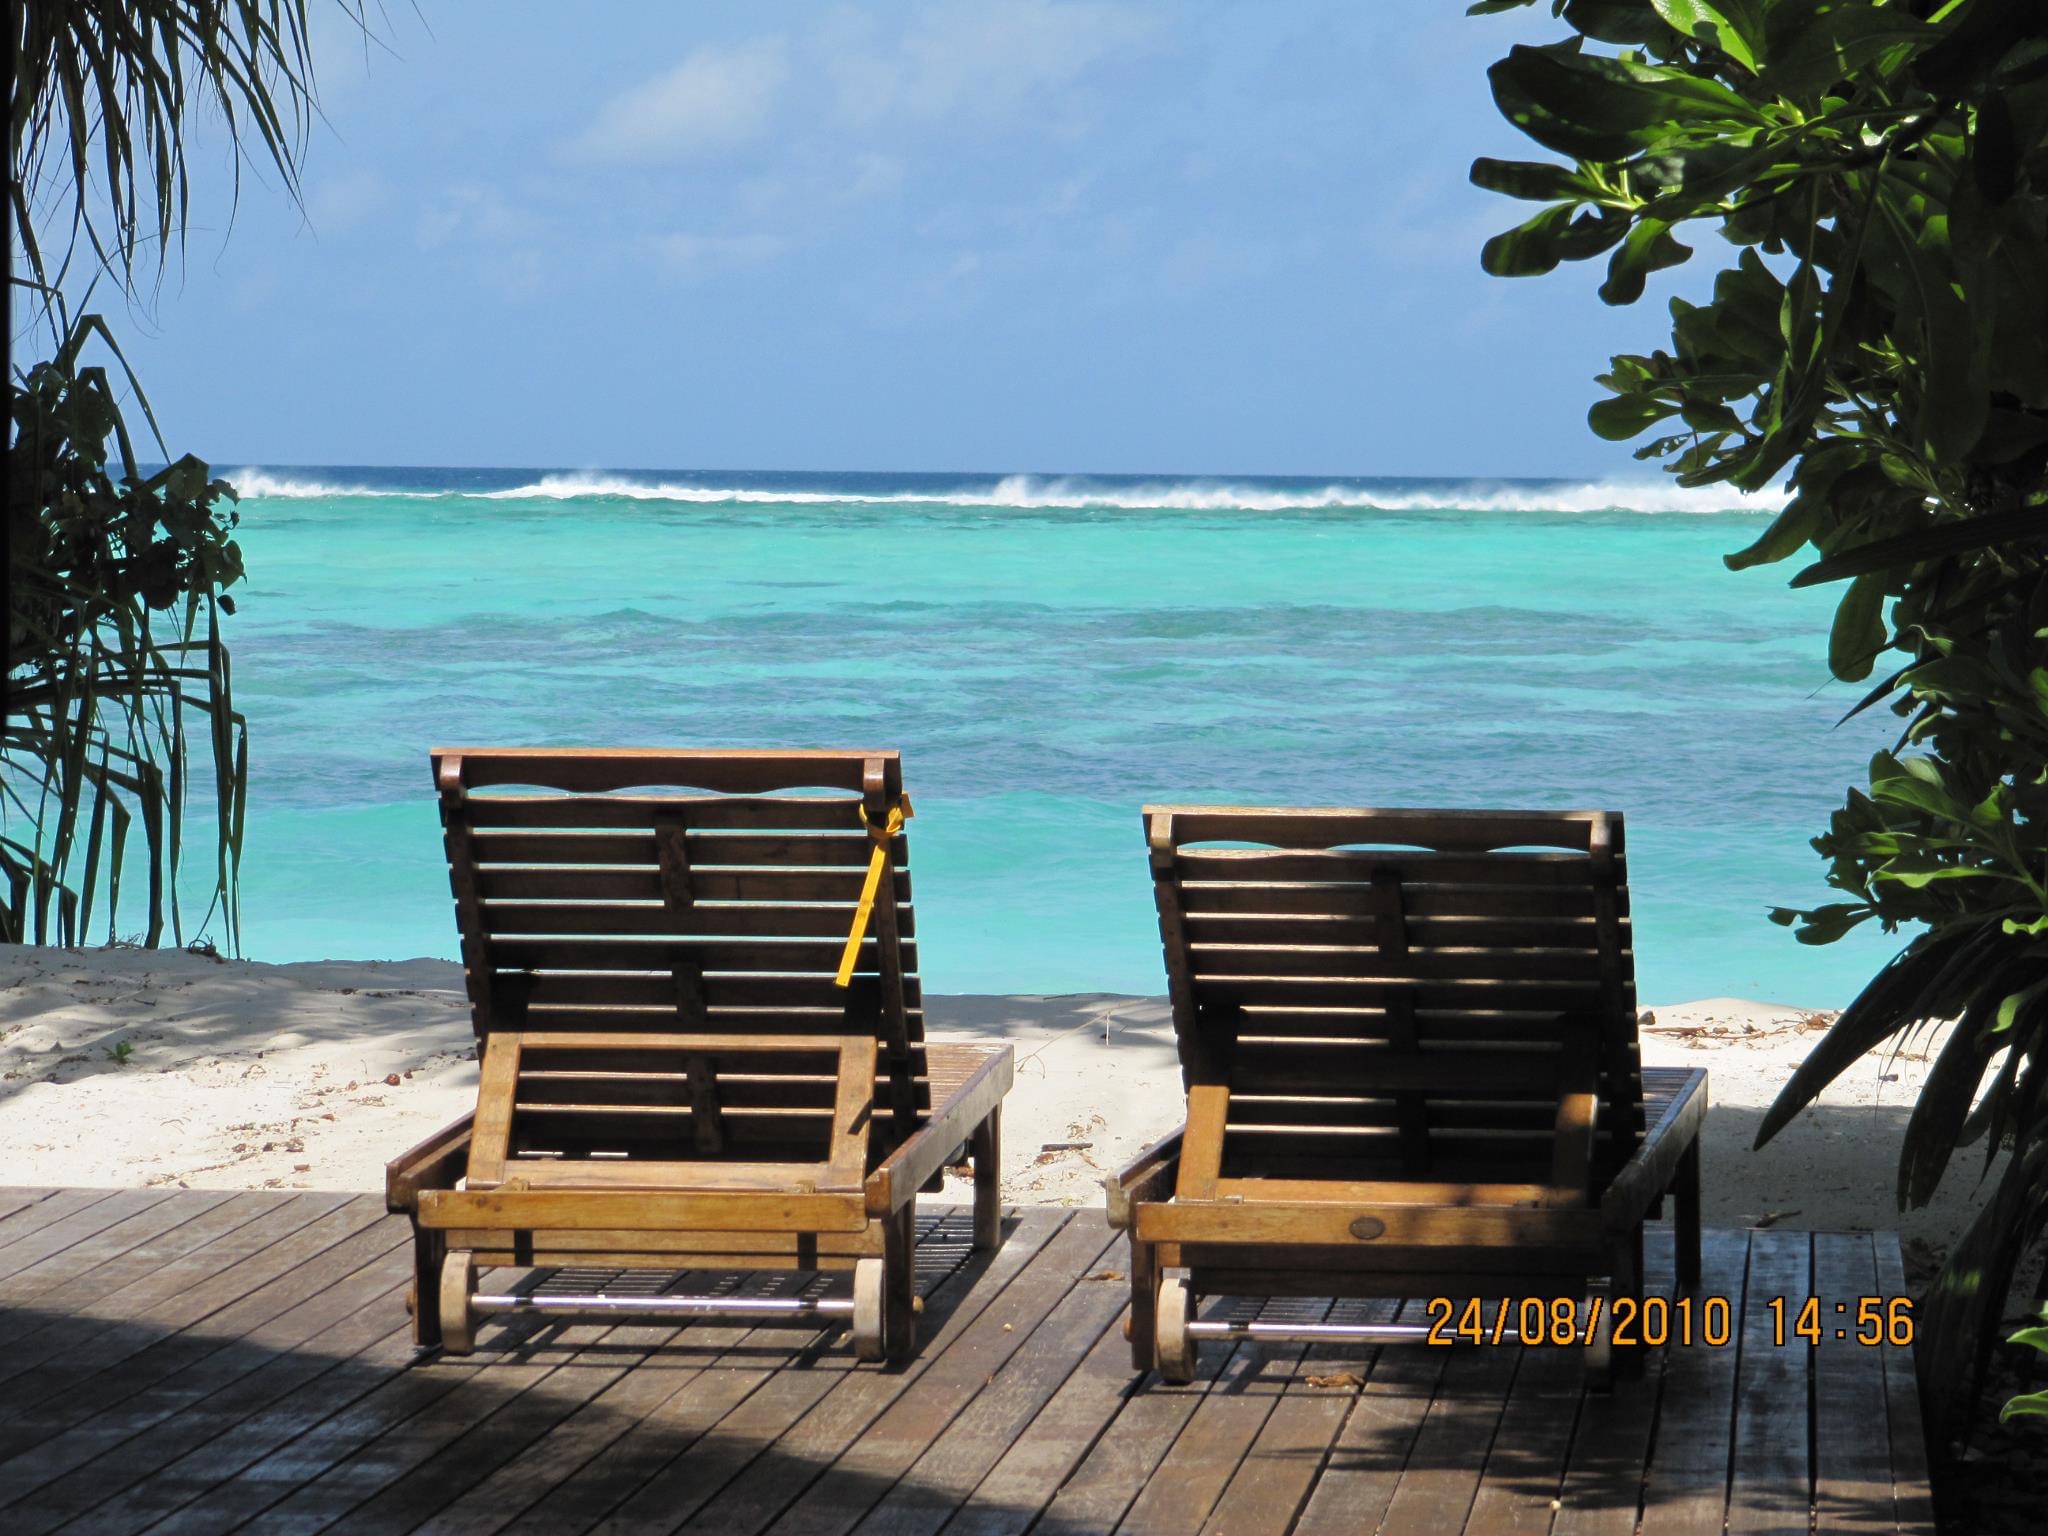 Viaje a Maldivas: "El Paraíso" 